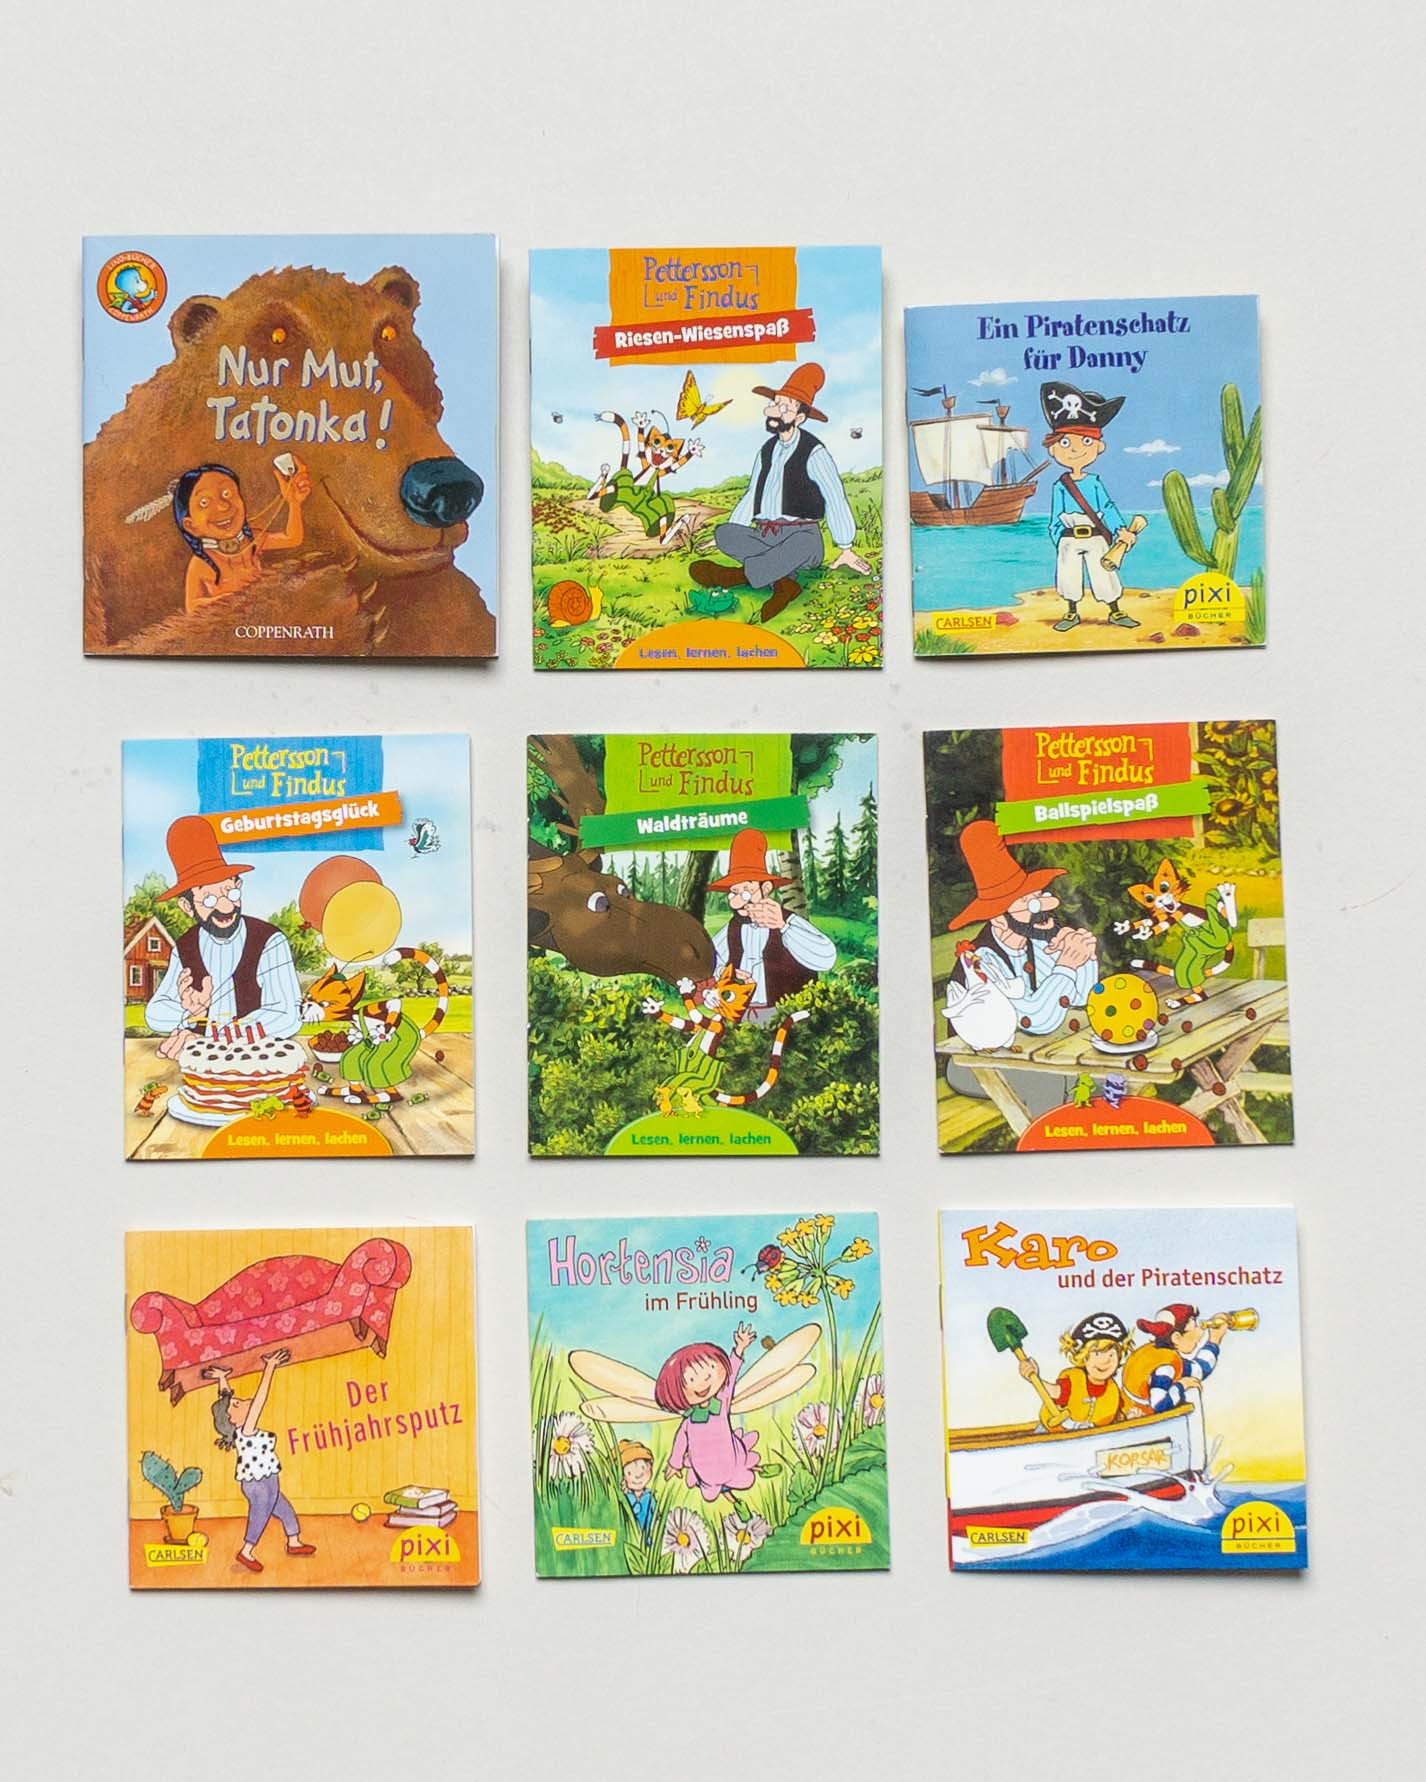 9 Pixi Bücher – Piraten Petterson und Findus Frühling Minibücher Set